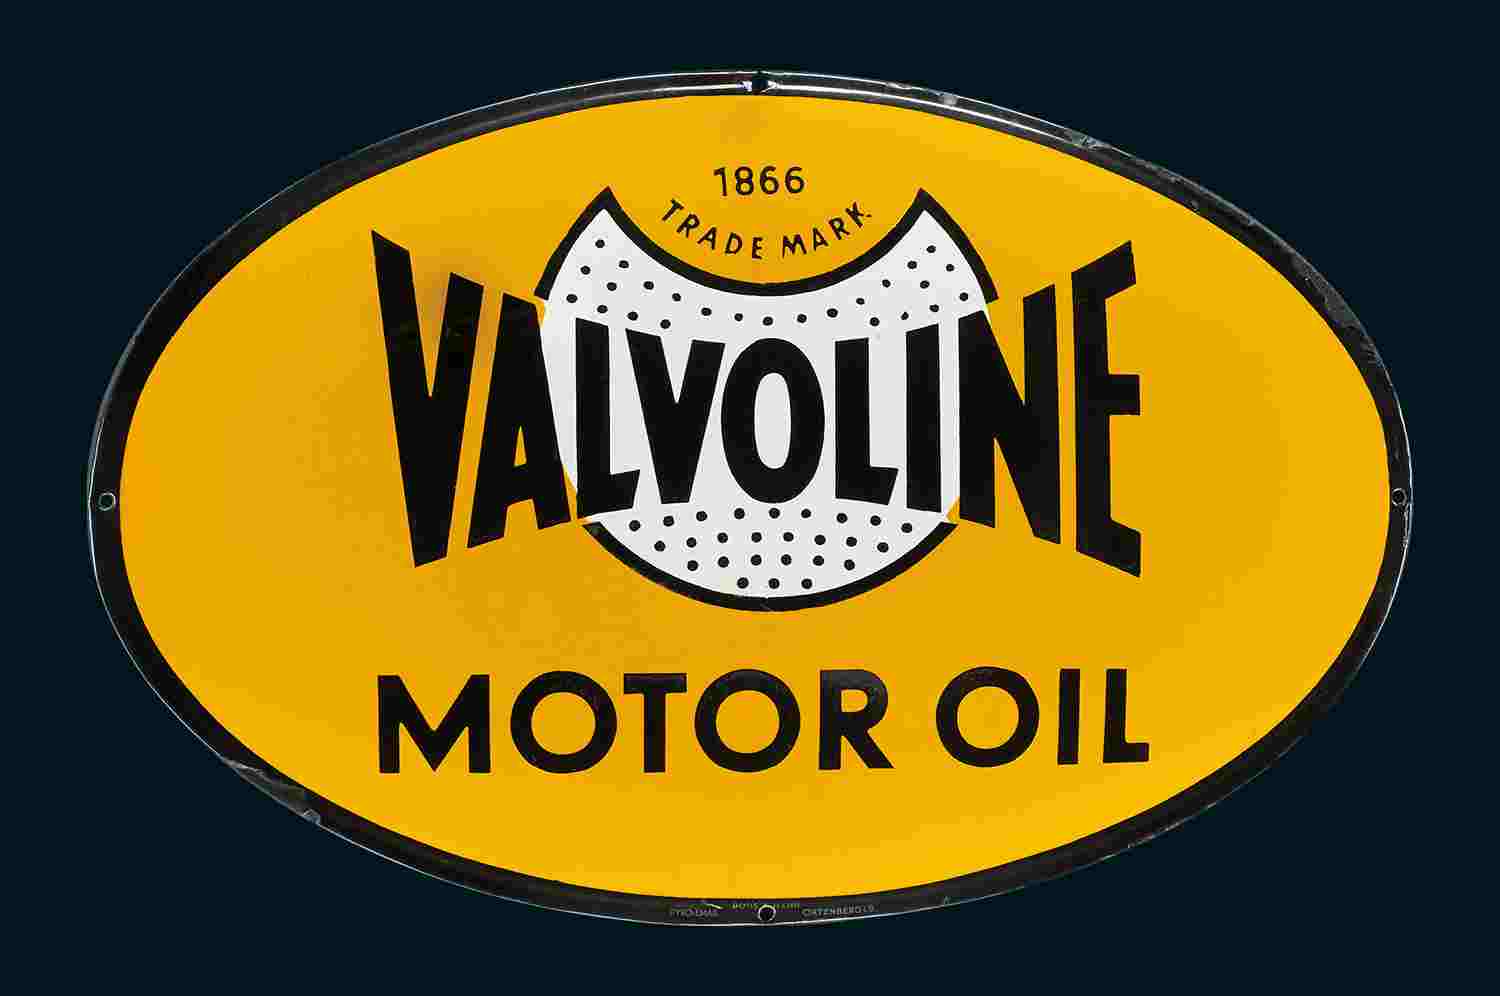 Valvoline Motor Oil  